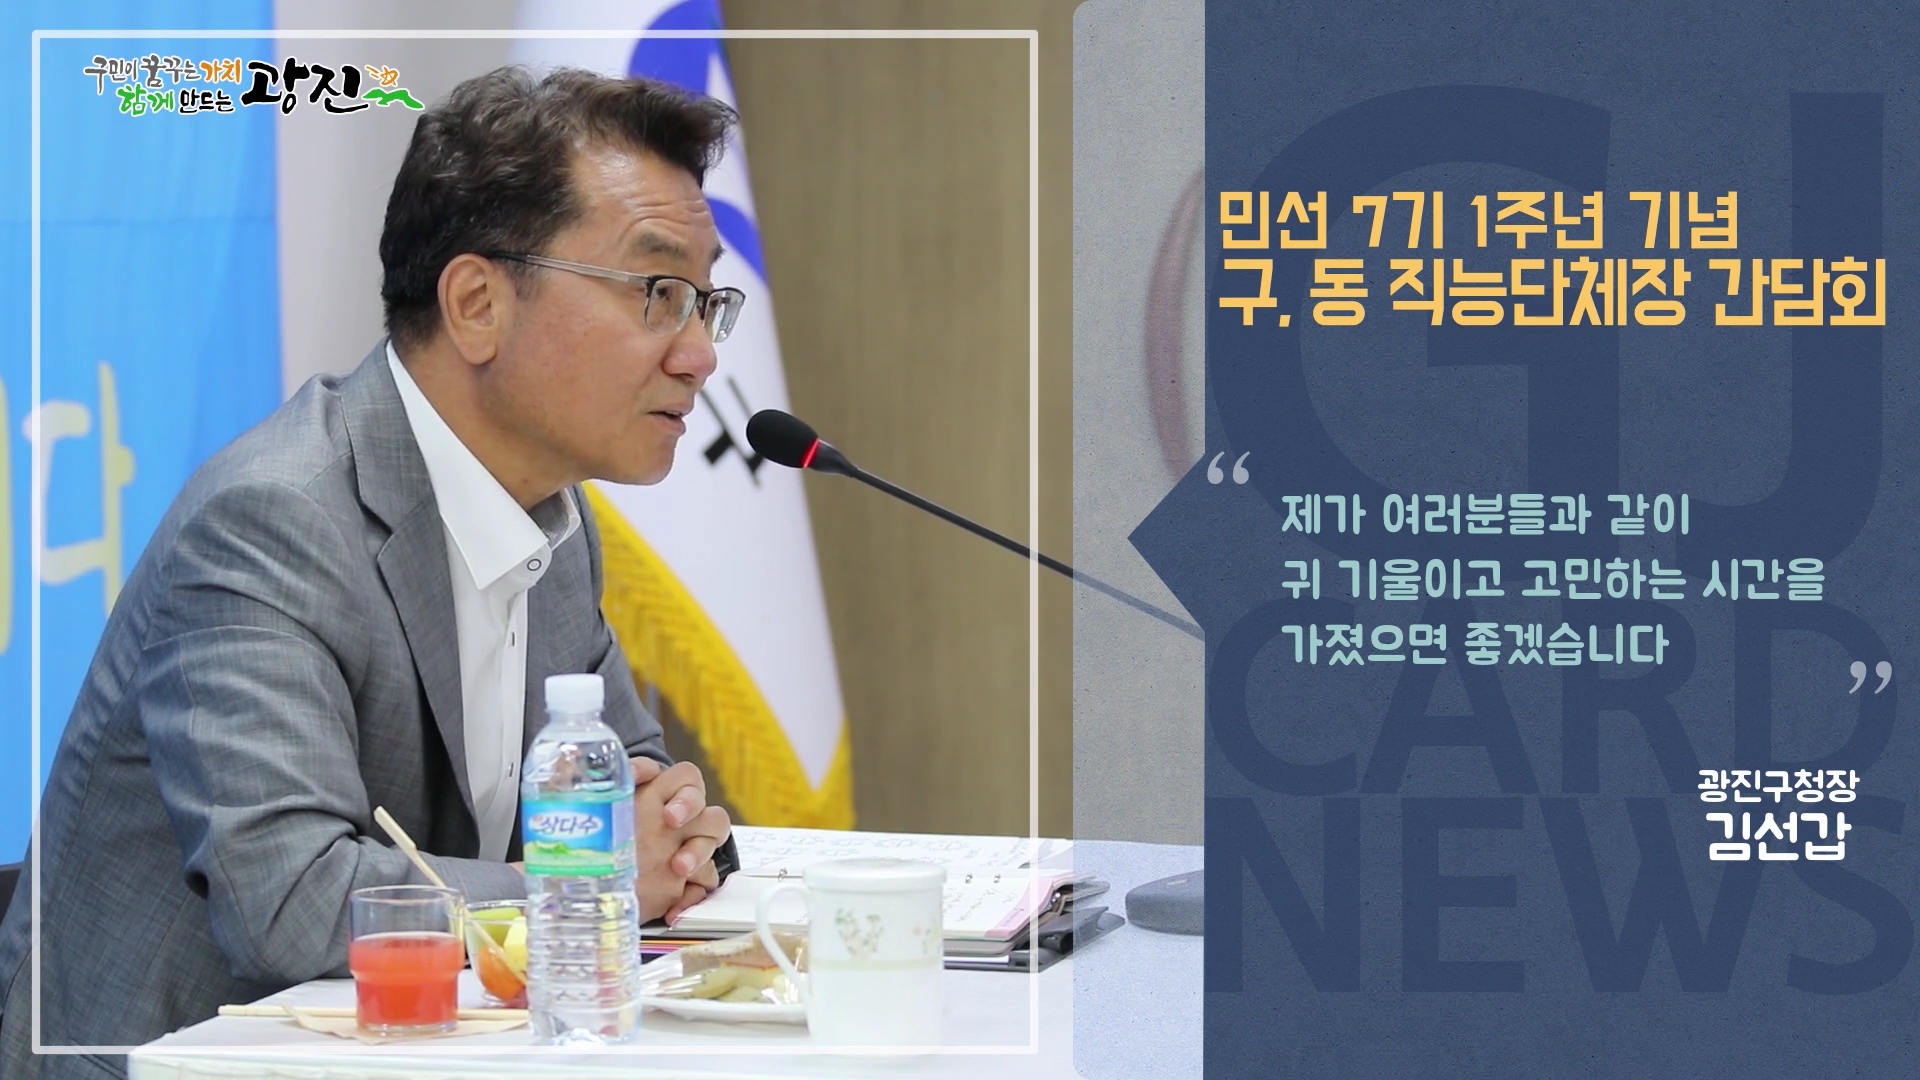 [광진카드뉴스 - 7월 셋째 주] 민선7기 1주년 기념, 구·동 직능단체장 간담회 개최